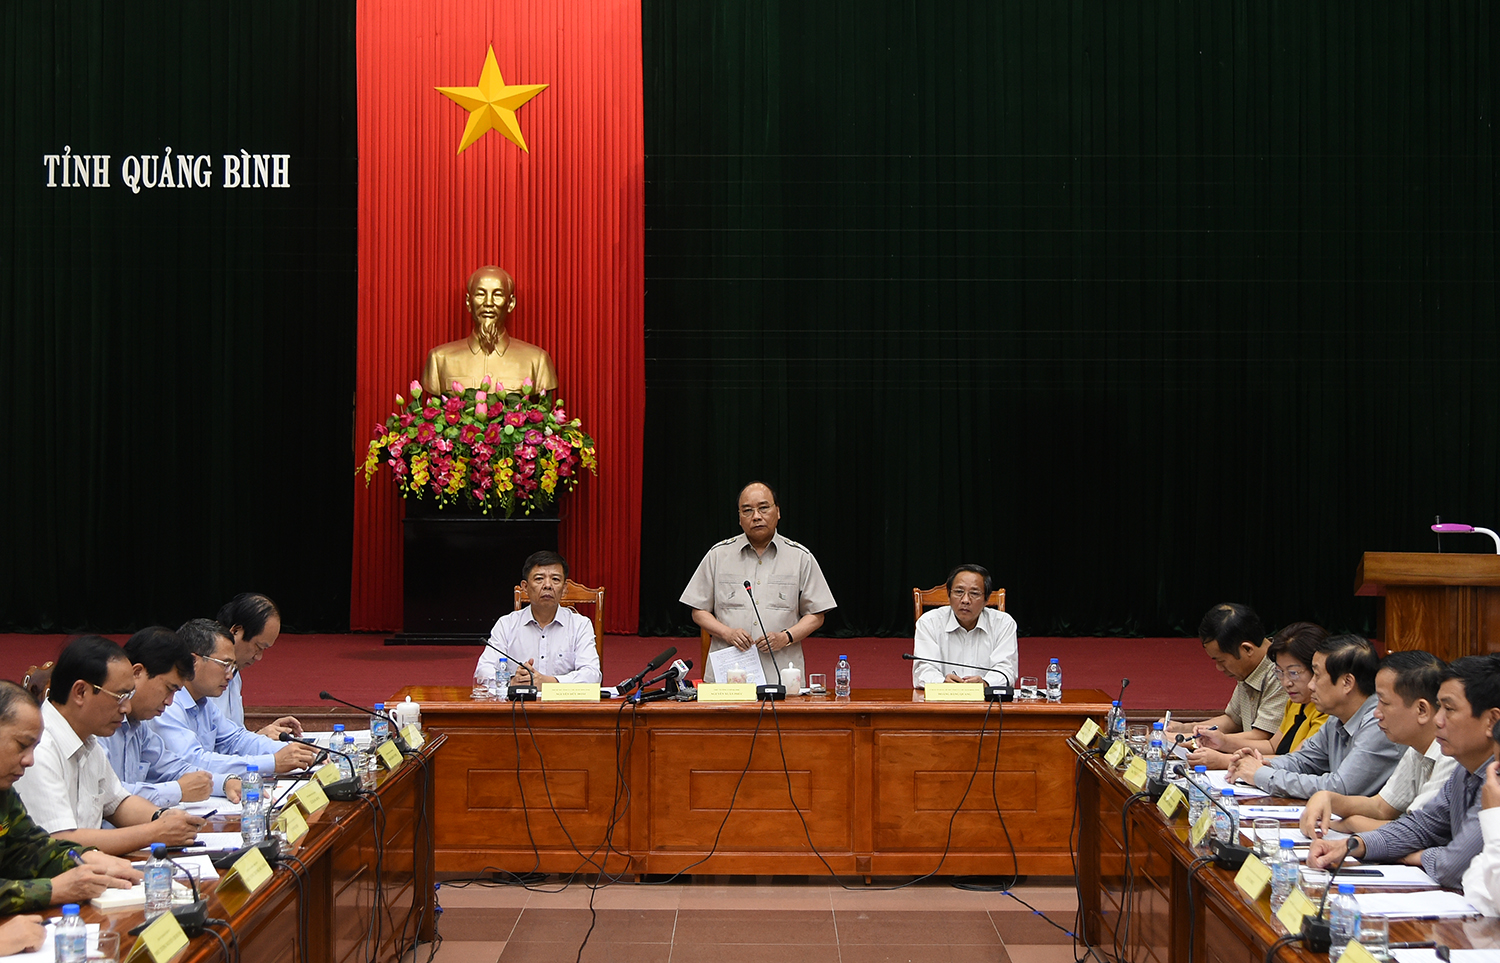 Thủ tướng phát biểu tại cuộc làm việc với lãnh đạo tỉnh Quảng Bình. Ảnh: VGP/Quang Hiếu